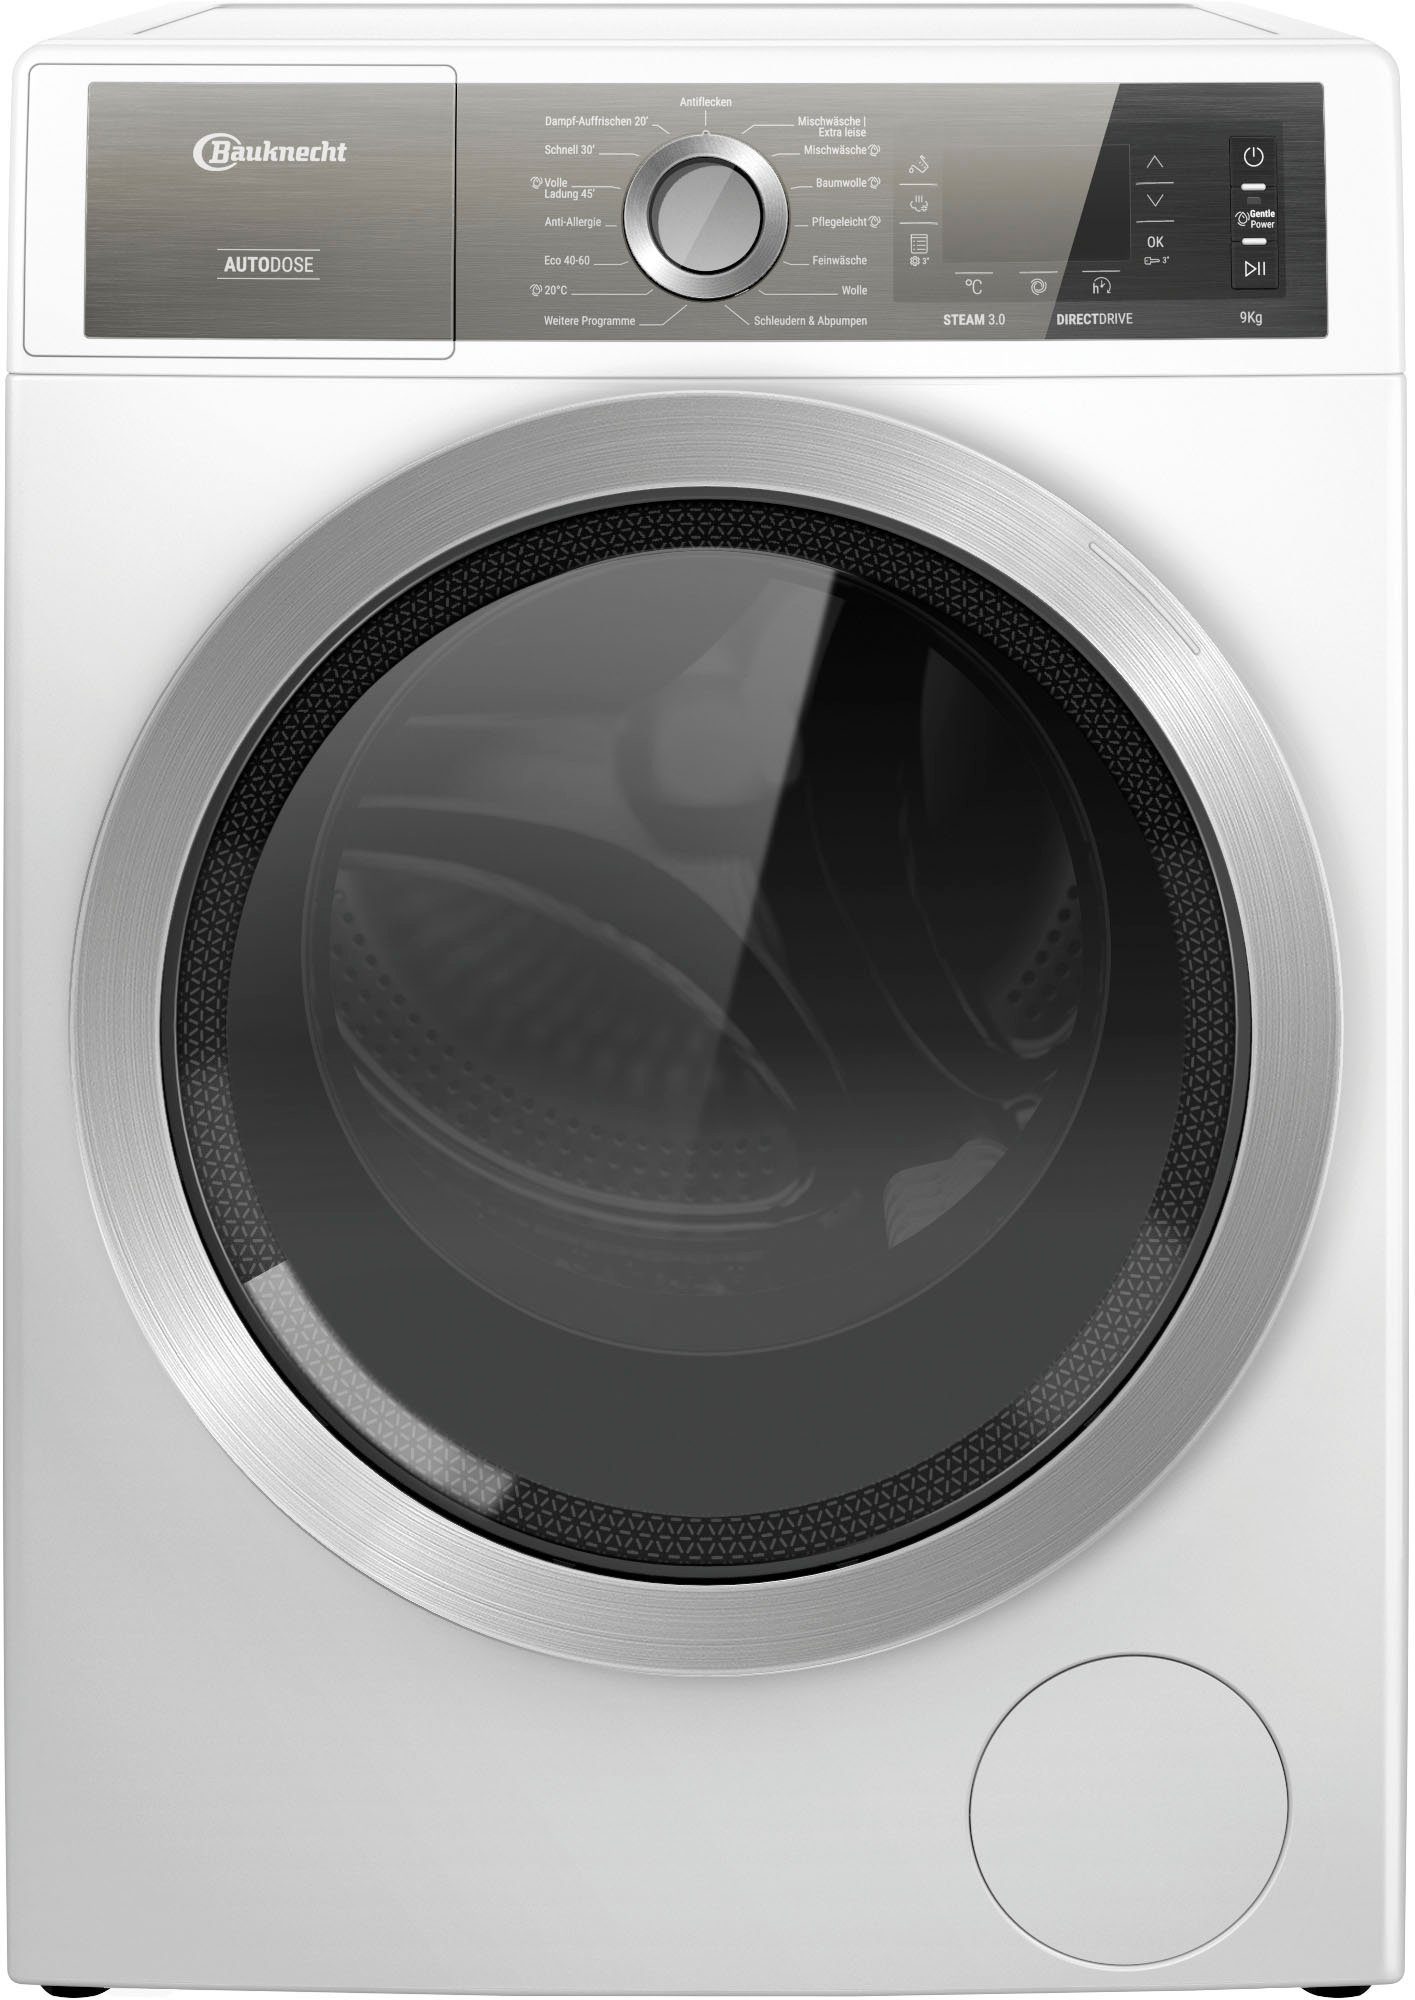 BAUKNECHT Waschmaschine DE, 4 W946WB Jahre Herstellergarantie 9 B8 U/min, kg, AutoDose, 1400